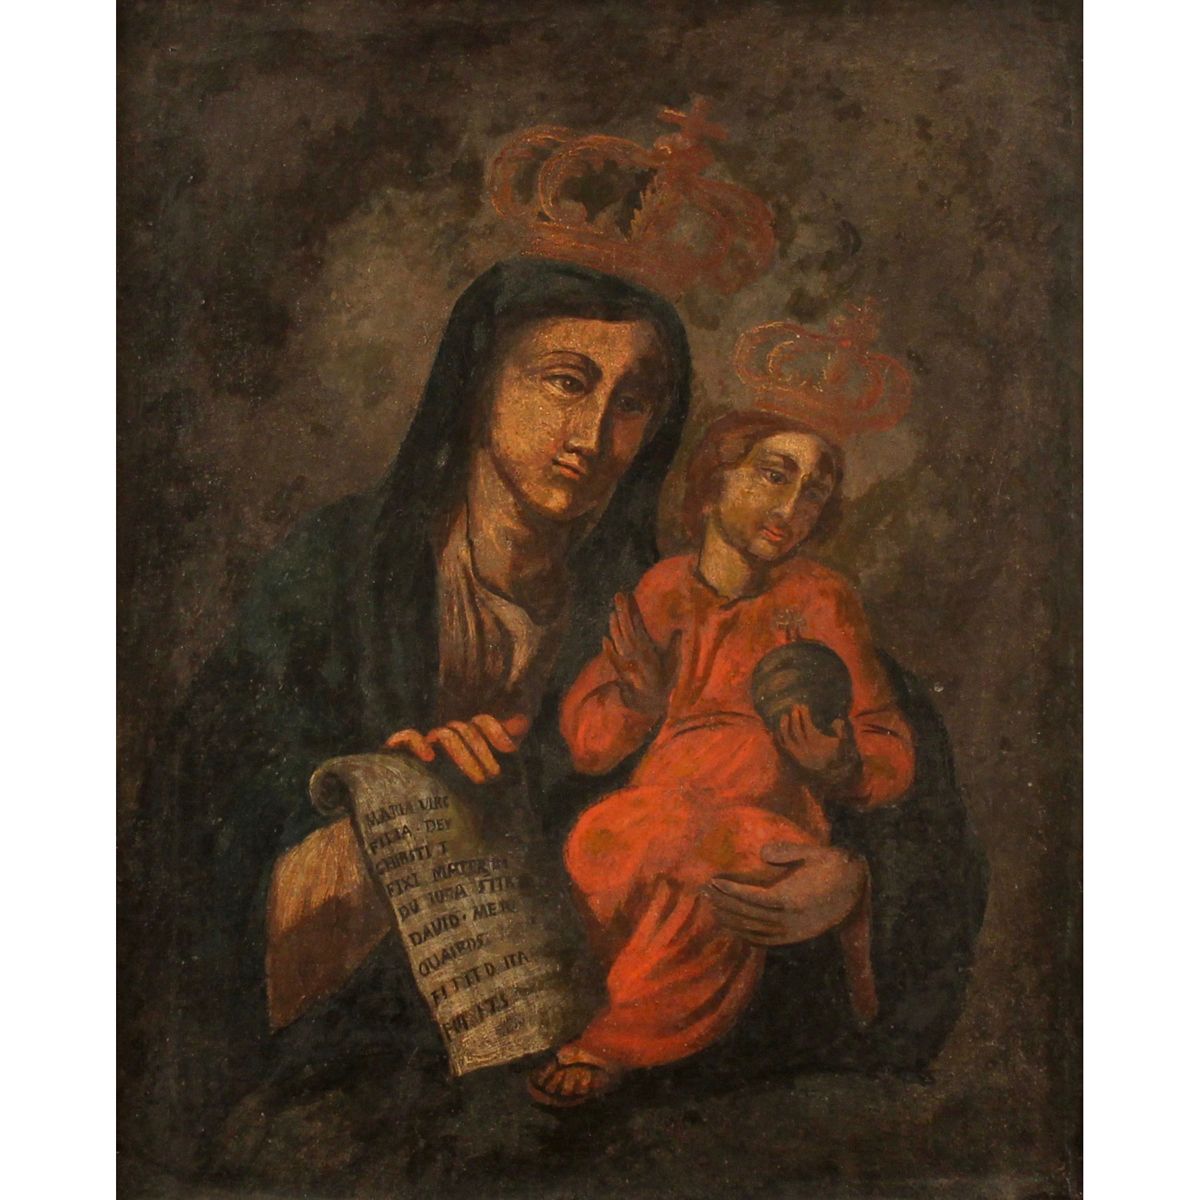 SCUOLA SICILIANA DEL SECOLO XVIII "La Madonna col bambino" - SICILIAN SCHOOL OF &hellip;